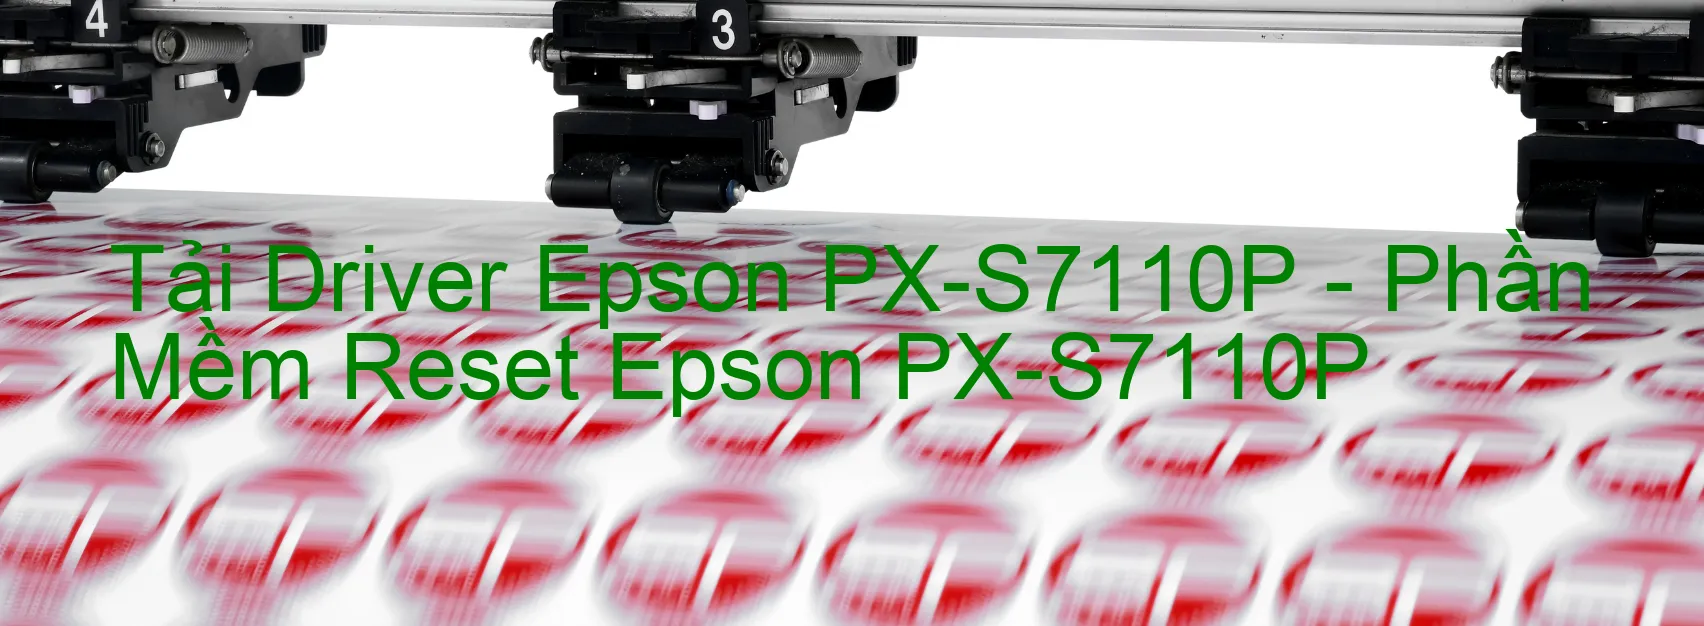 Driver Epson PX-S7110P, Phần Mềm Reset Epson PX-S7110P